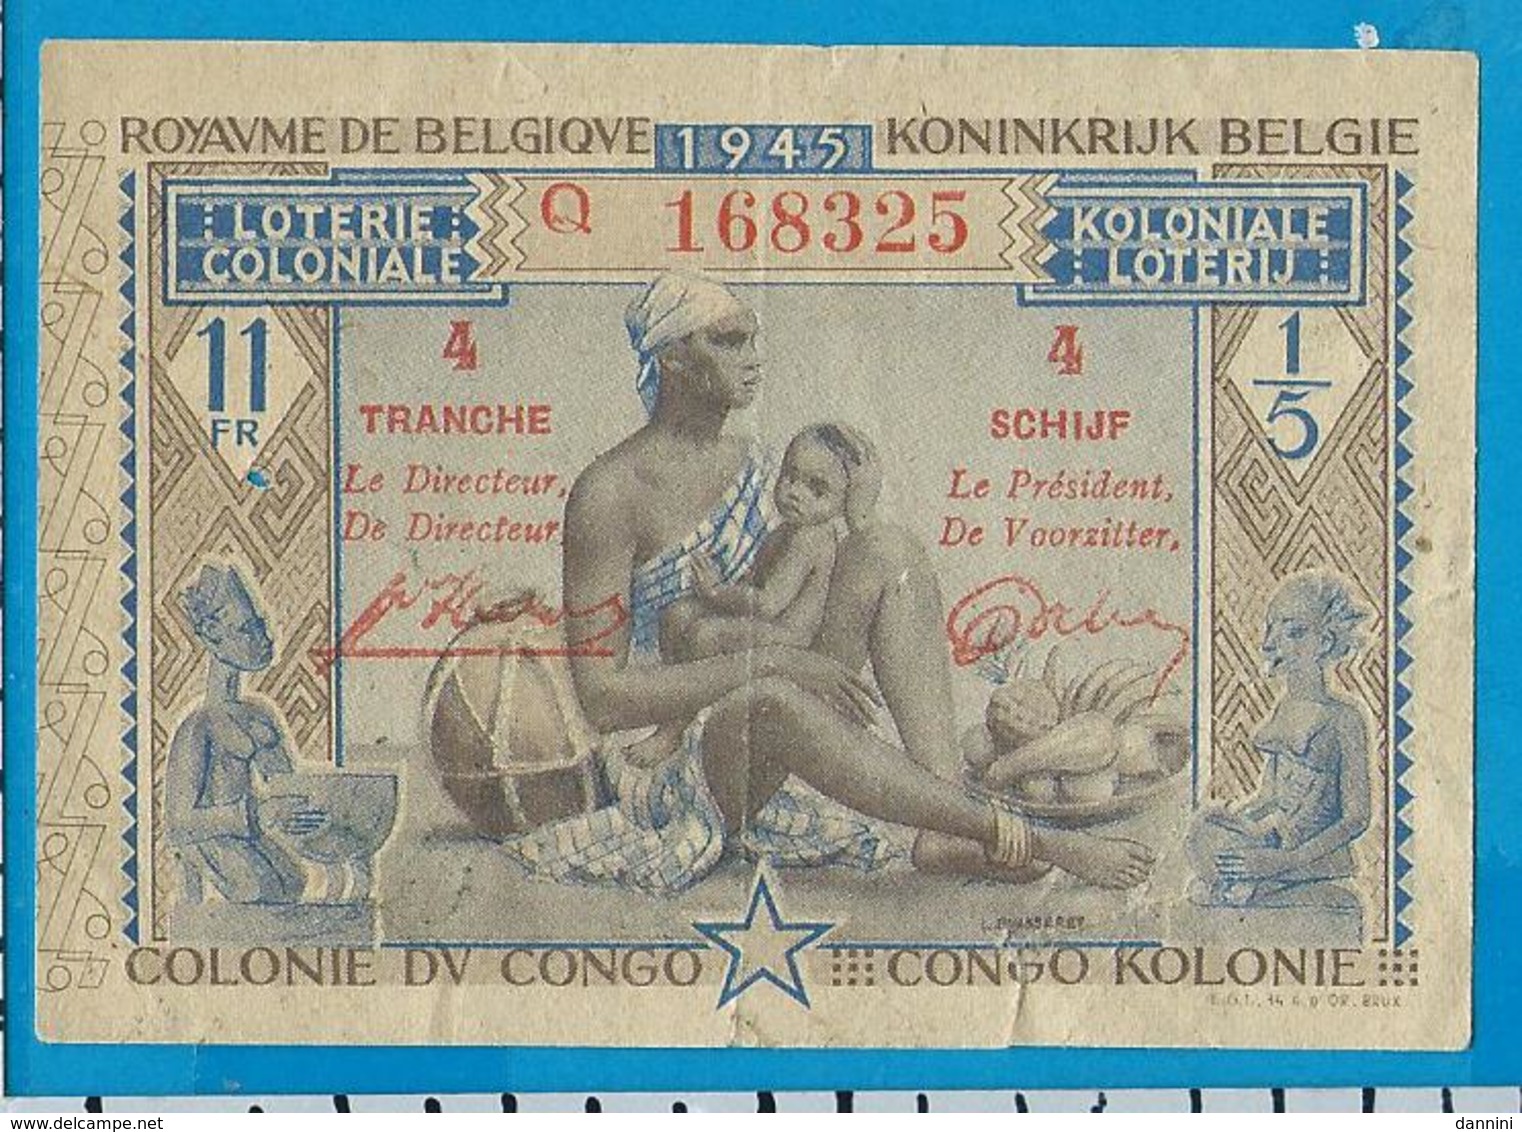 Koloniale Lotterij   1945  Congo - Billets De Loterie